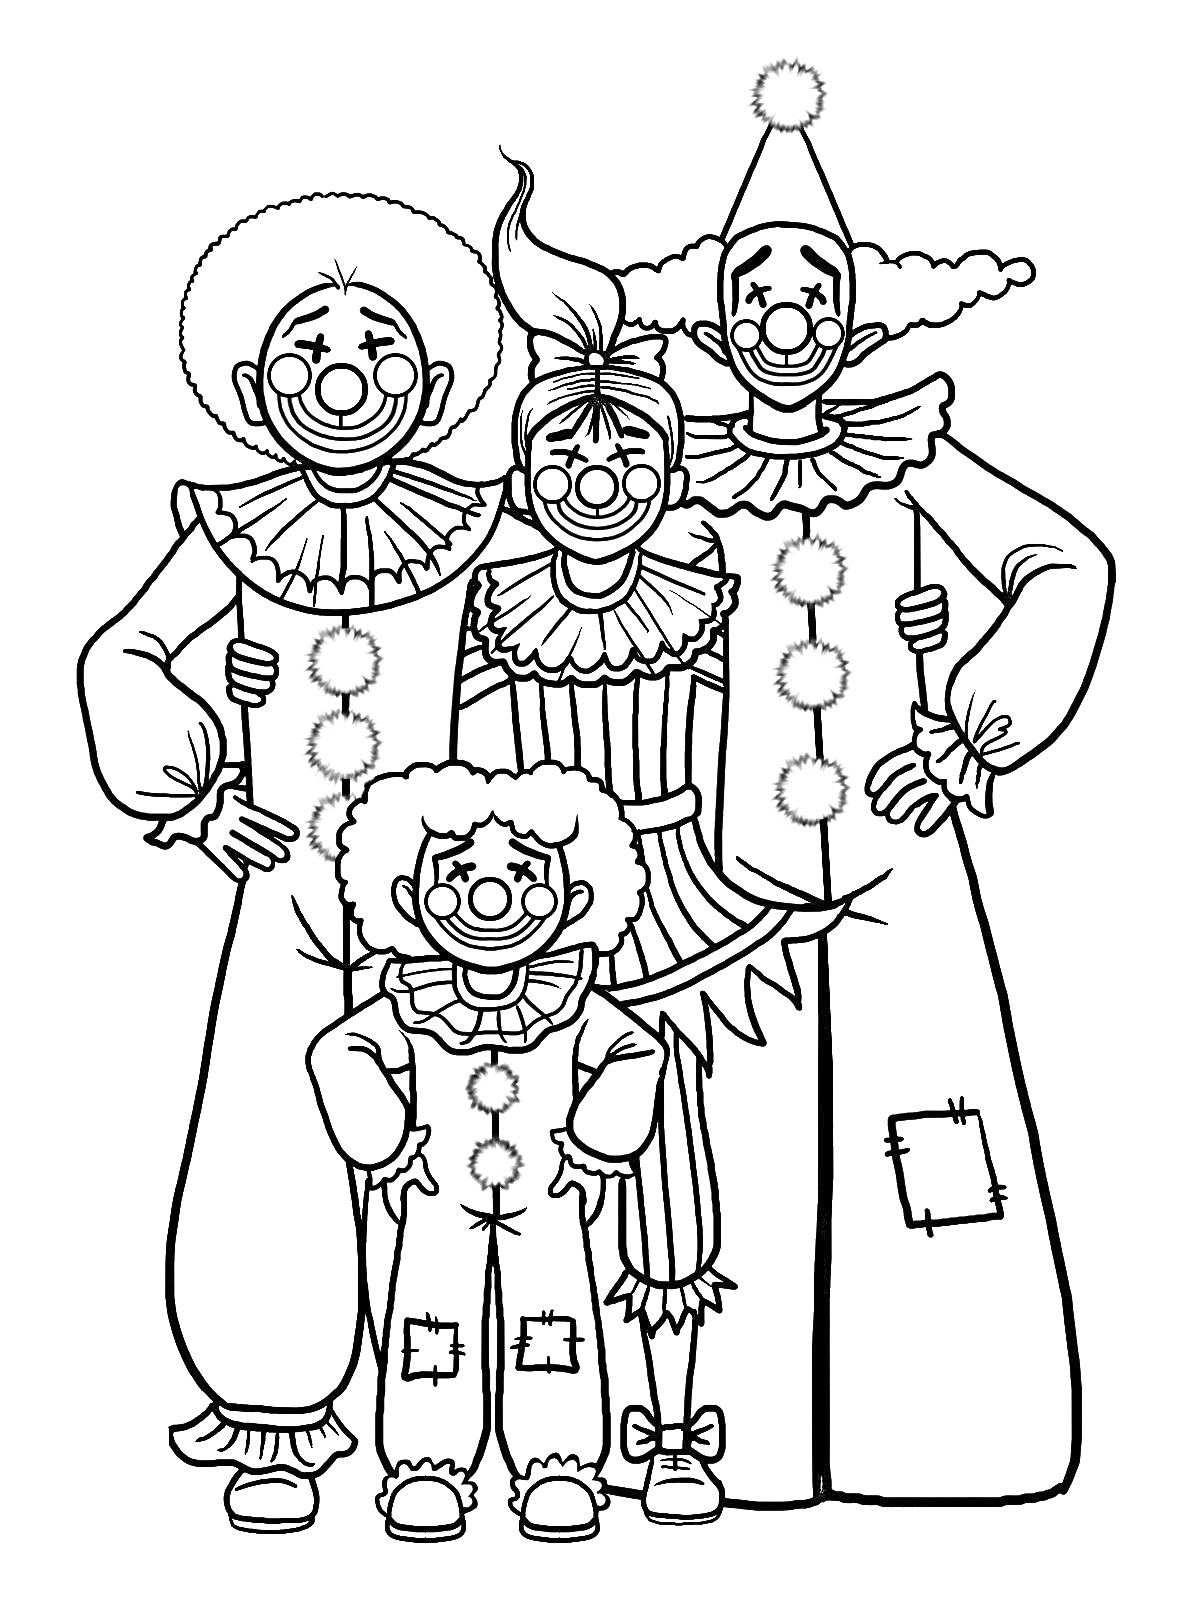 Семья клоунов: четыре клоуна в костюмах с большими пуговицами, париками и гримом, один с конусообразной шляпой, один с лохмотьями на брюках.